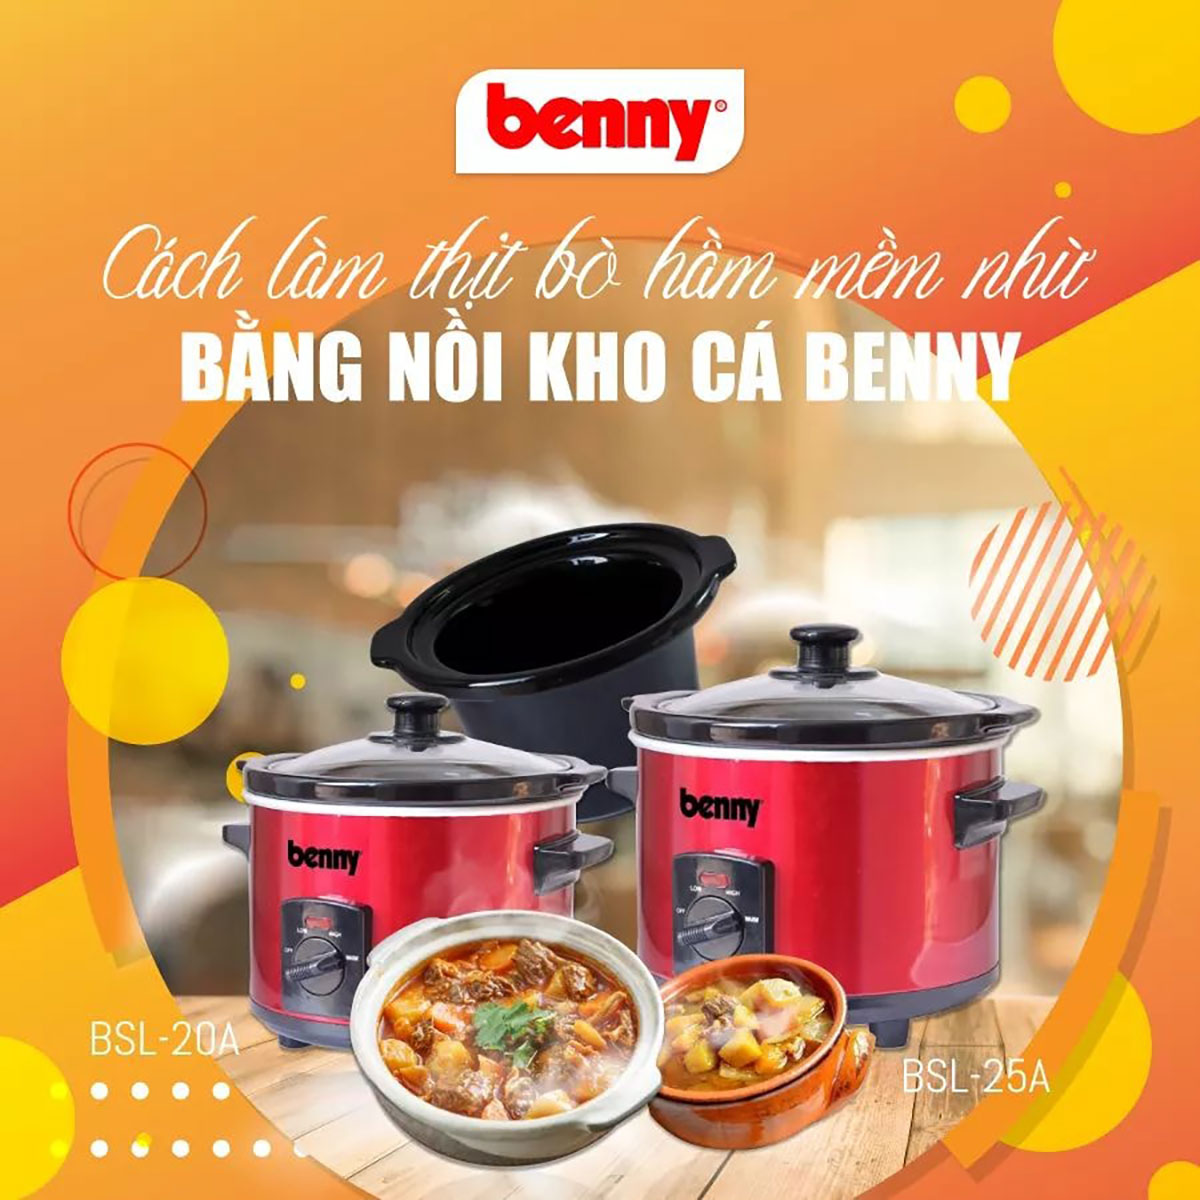 Nồi nấu chậm Benny BSL-20A - Nấu 20 món khác nhau, giữ nguyên chất và hương vị nguyên liệu